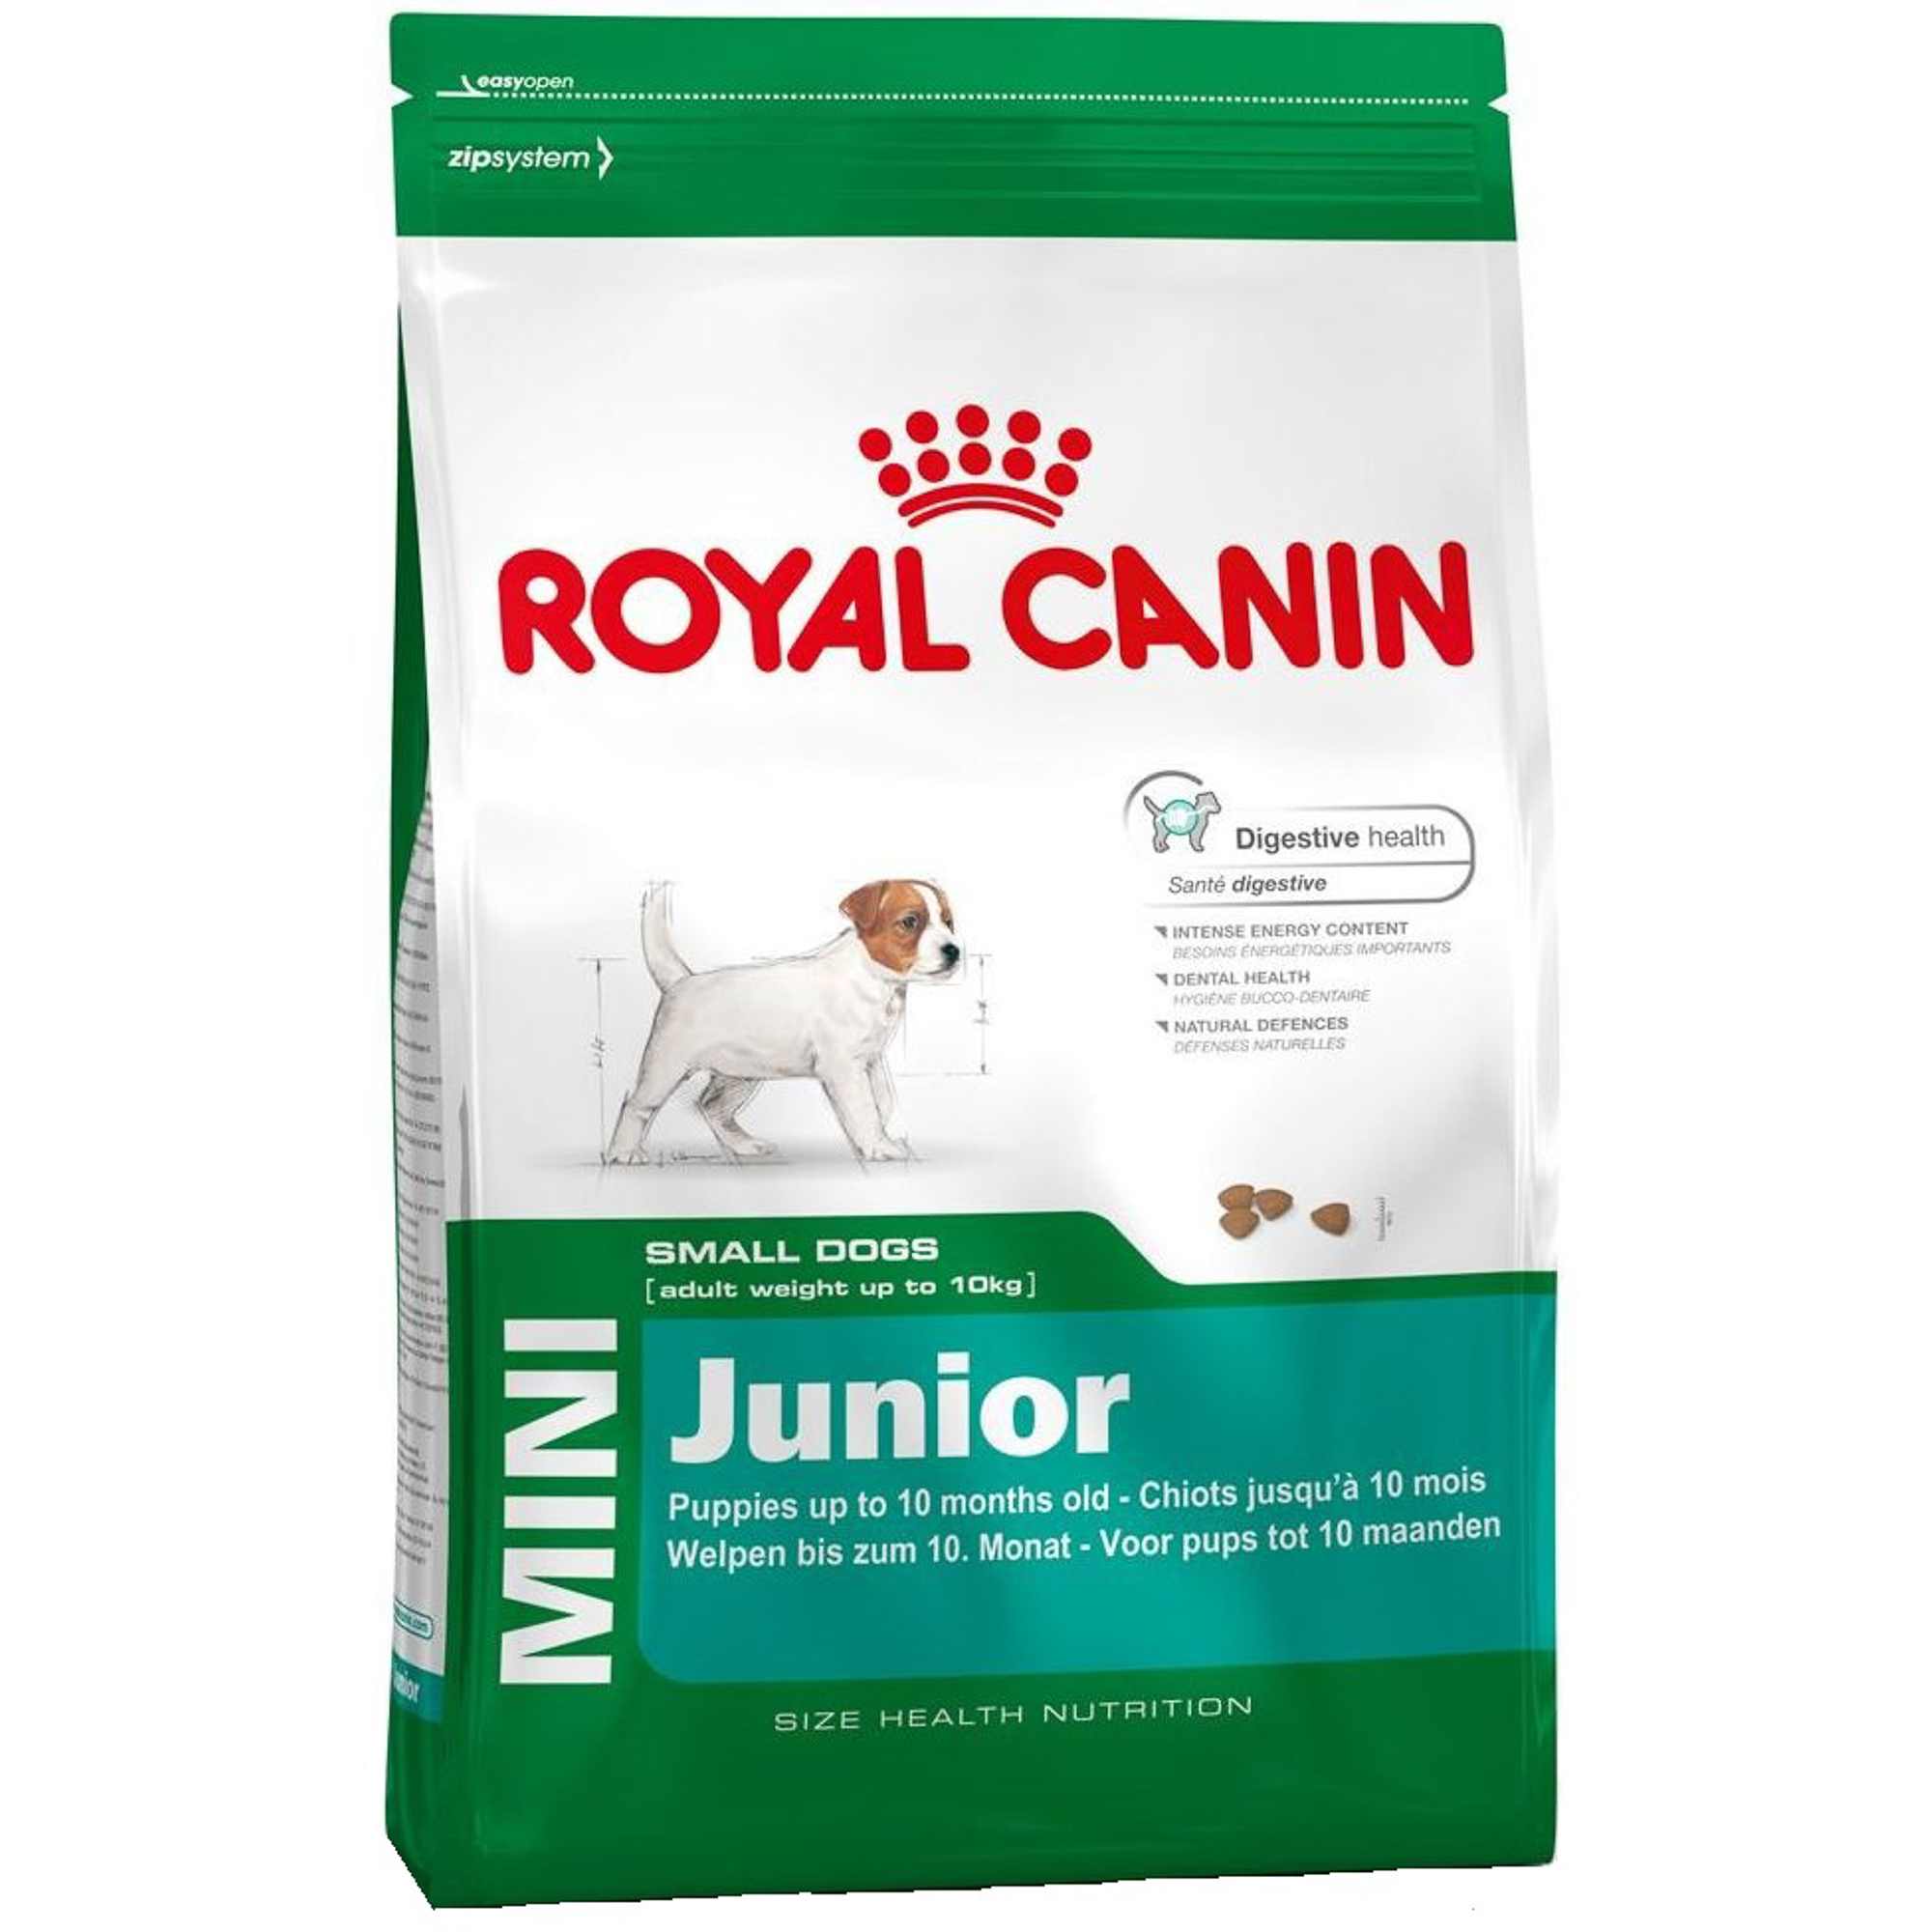 Корм для щенков Royal Canin JUNIOR для мелких пород, с 2 до 10 месяцев, 2 кг корм для собак pro plan для мелких и карликовых пород с уткой в соусе 85 г